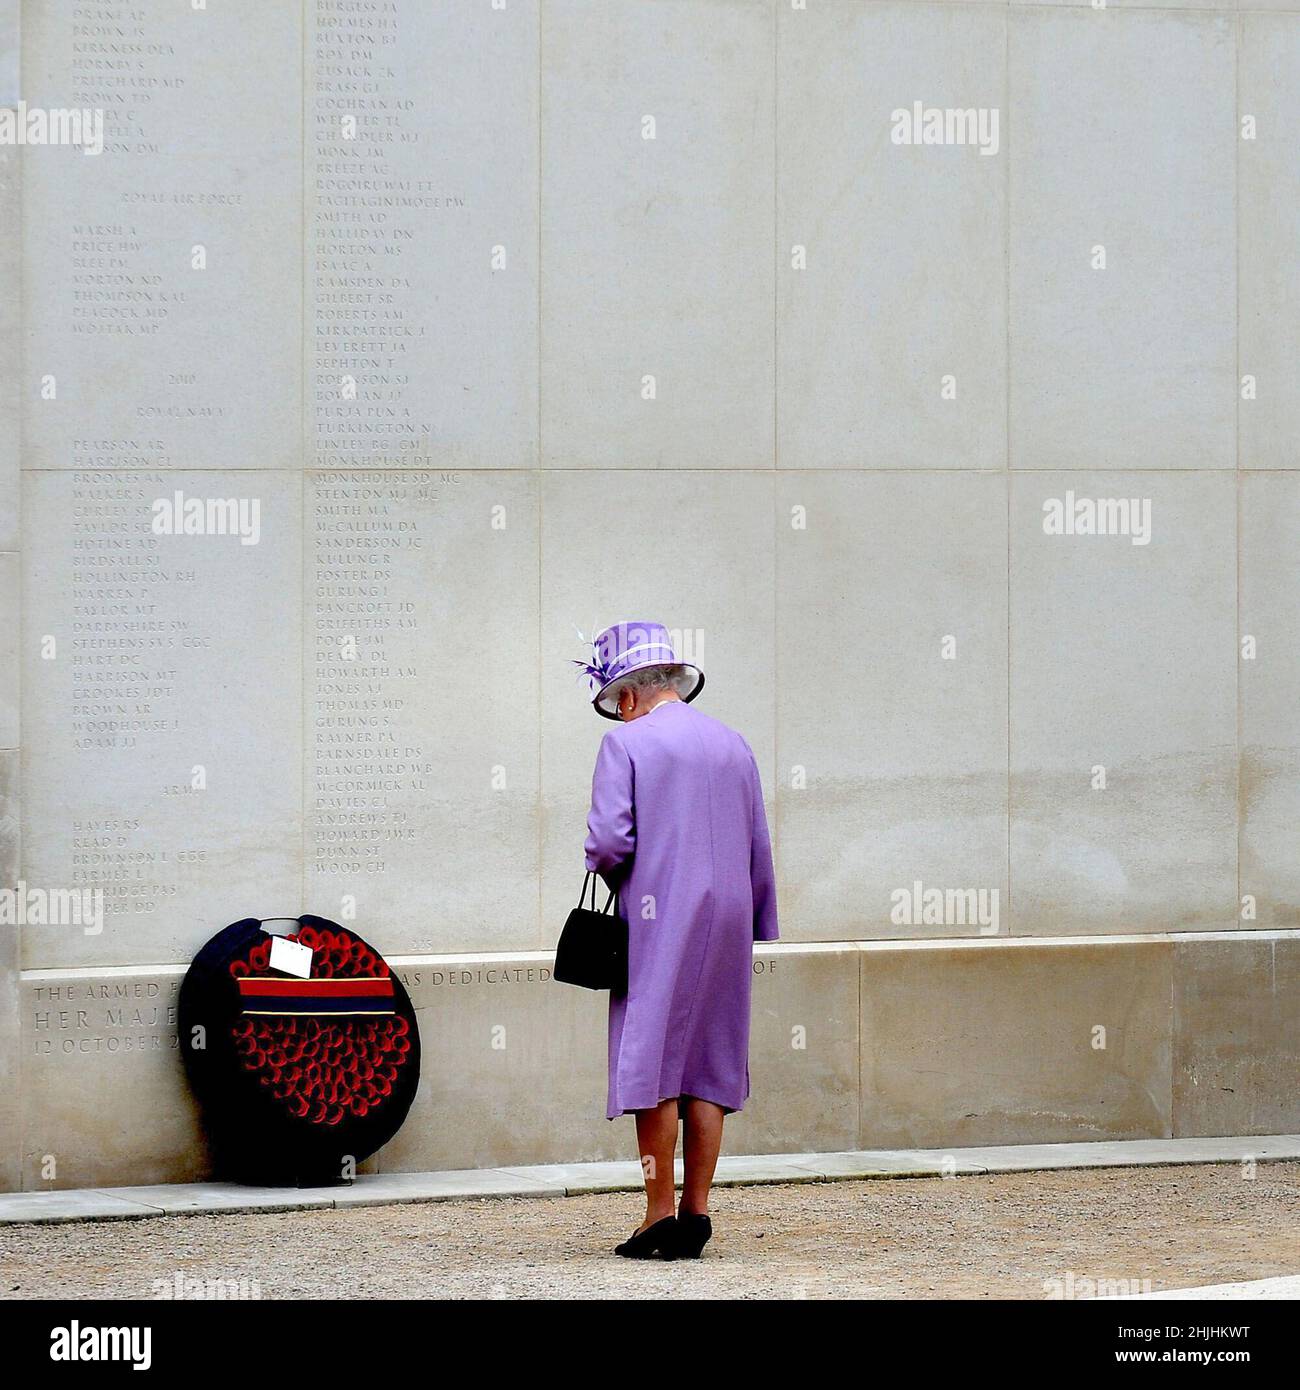 Foto del archivo fechada el 20/07/11 de la Reina Isabel II durante una visita al Arboretum del Monumento Nacional, Staffordshire, donde colocó una corona al lado del muro del Monumento a las Fuerzas Armadas. Fecha de emisión: Domingo 30 de enero de 2022. Foto de stock